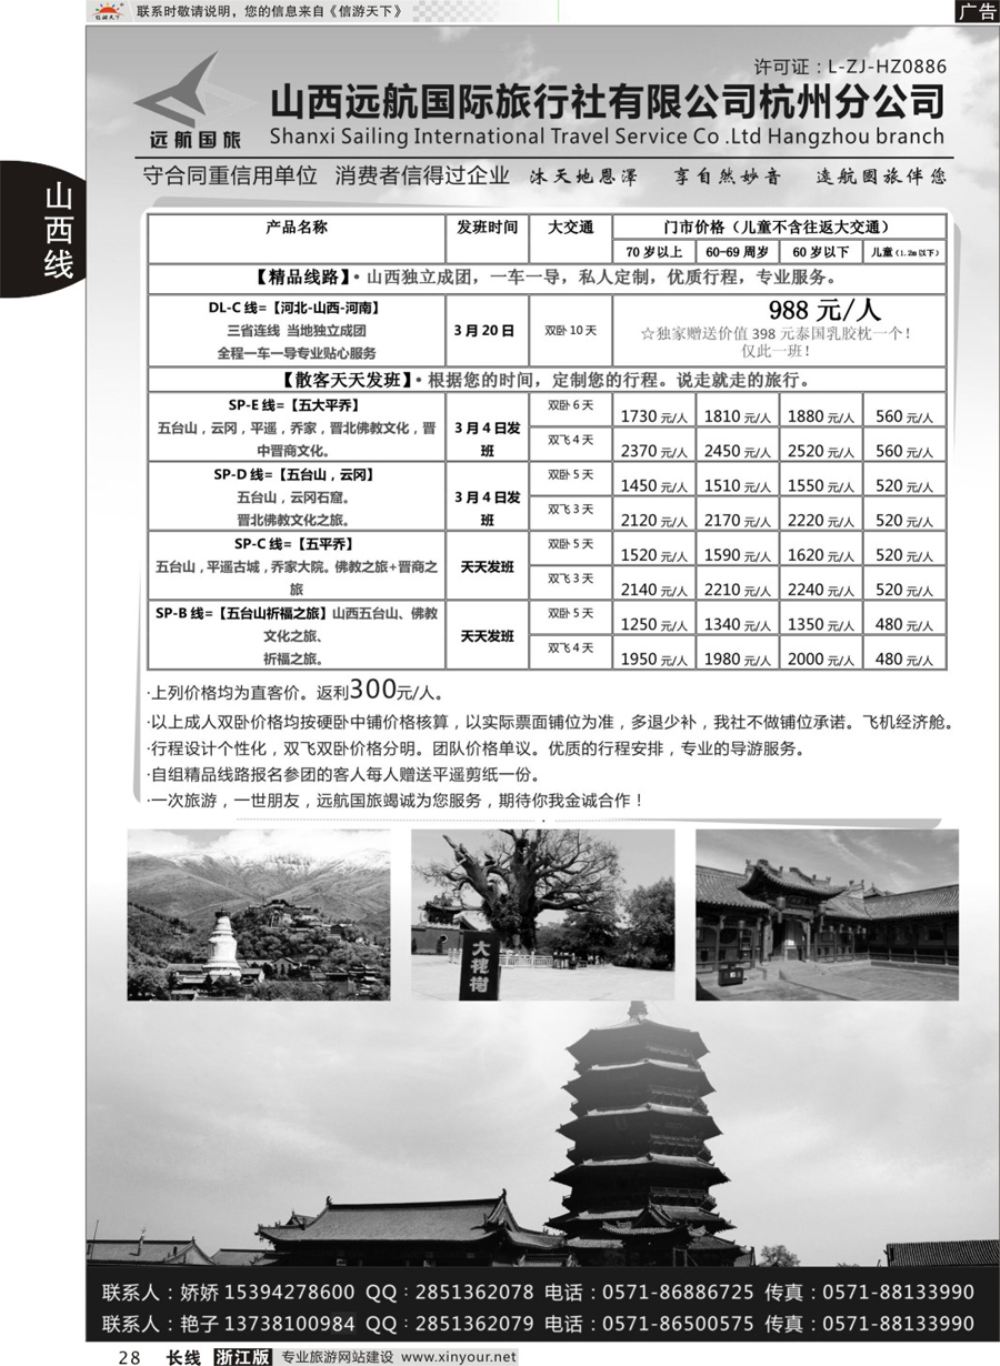 28山西远航国际旅行社有限公司杭州分公司